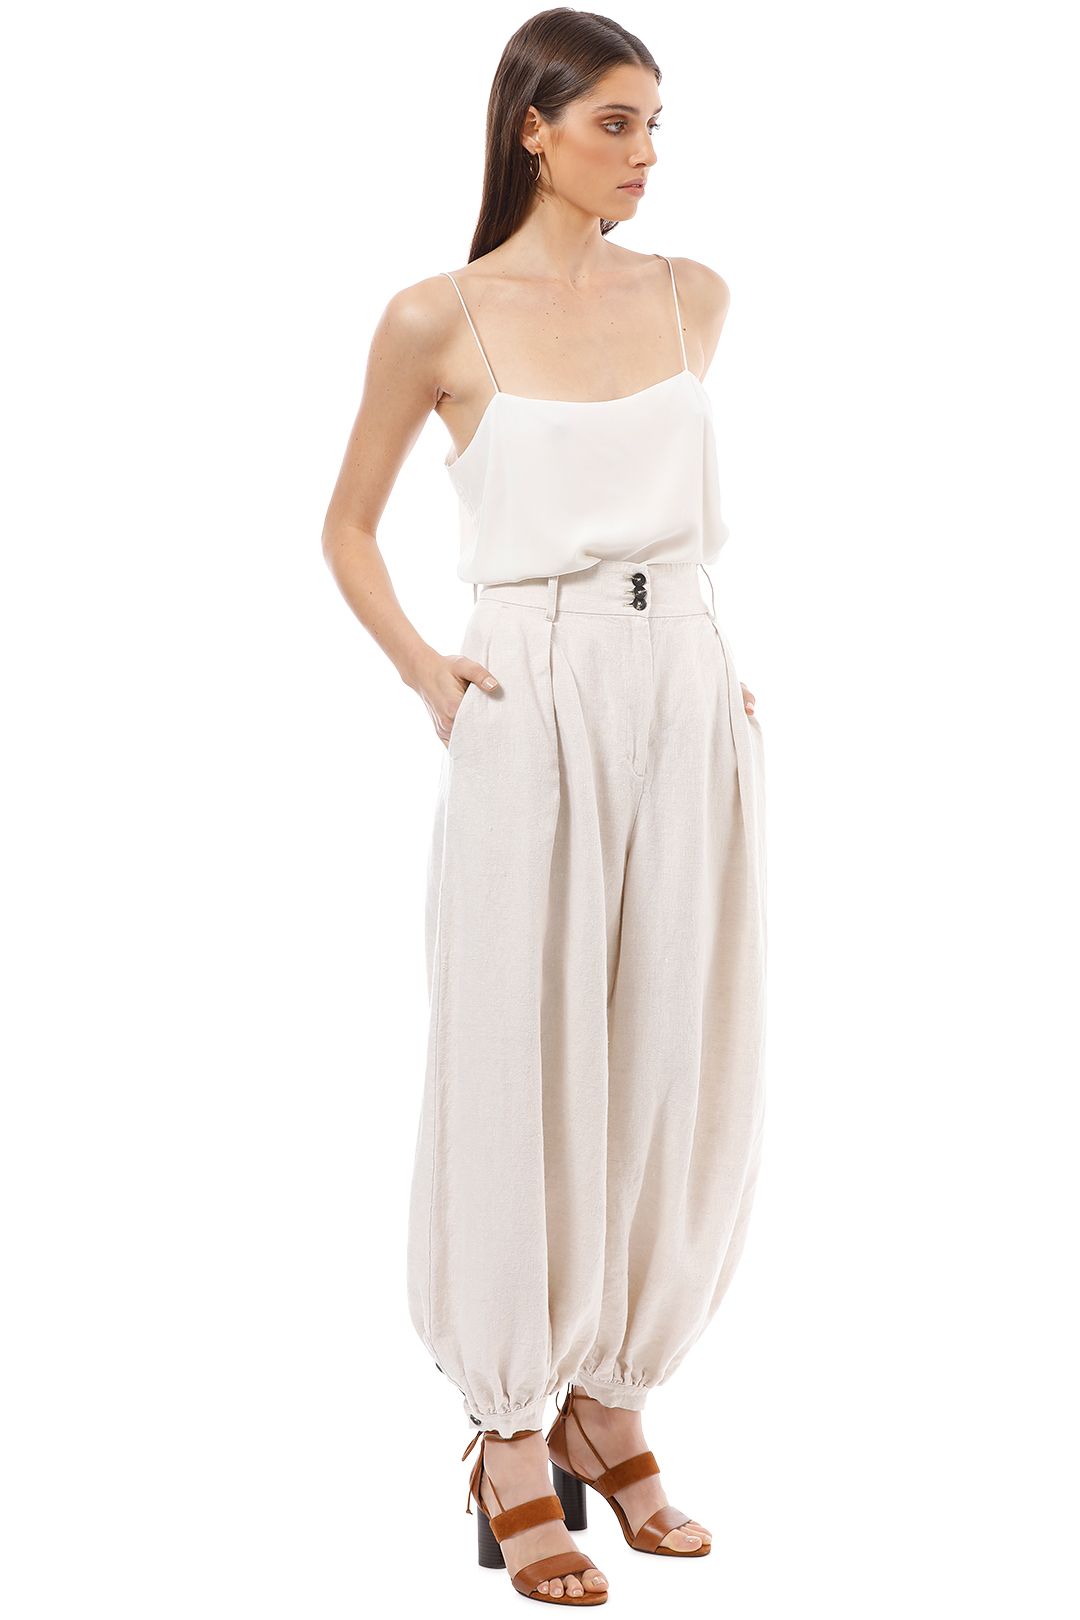 Shona Joy - Linen Tailored Harem Pants with Belt - Natural - Side